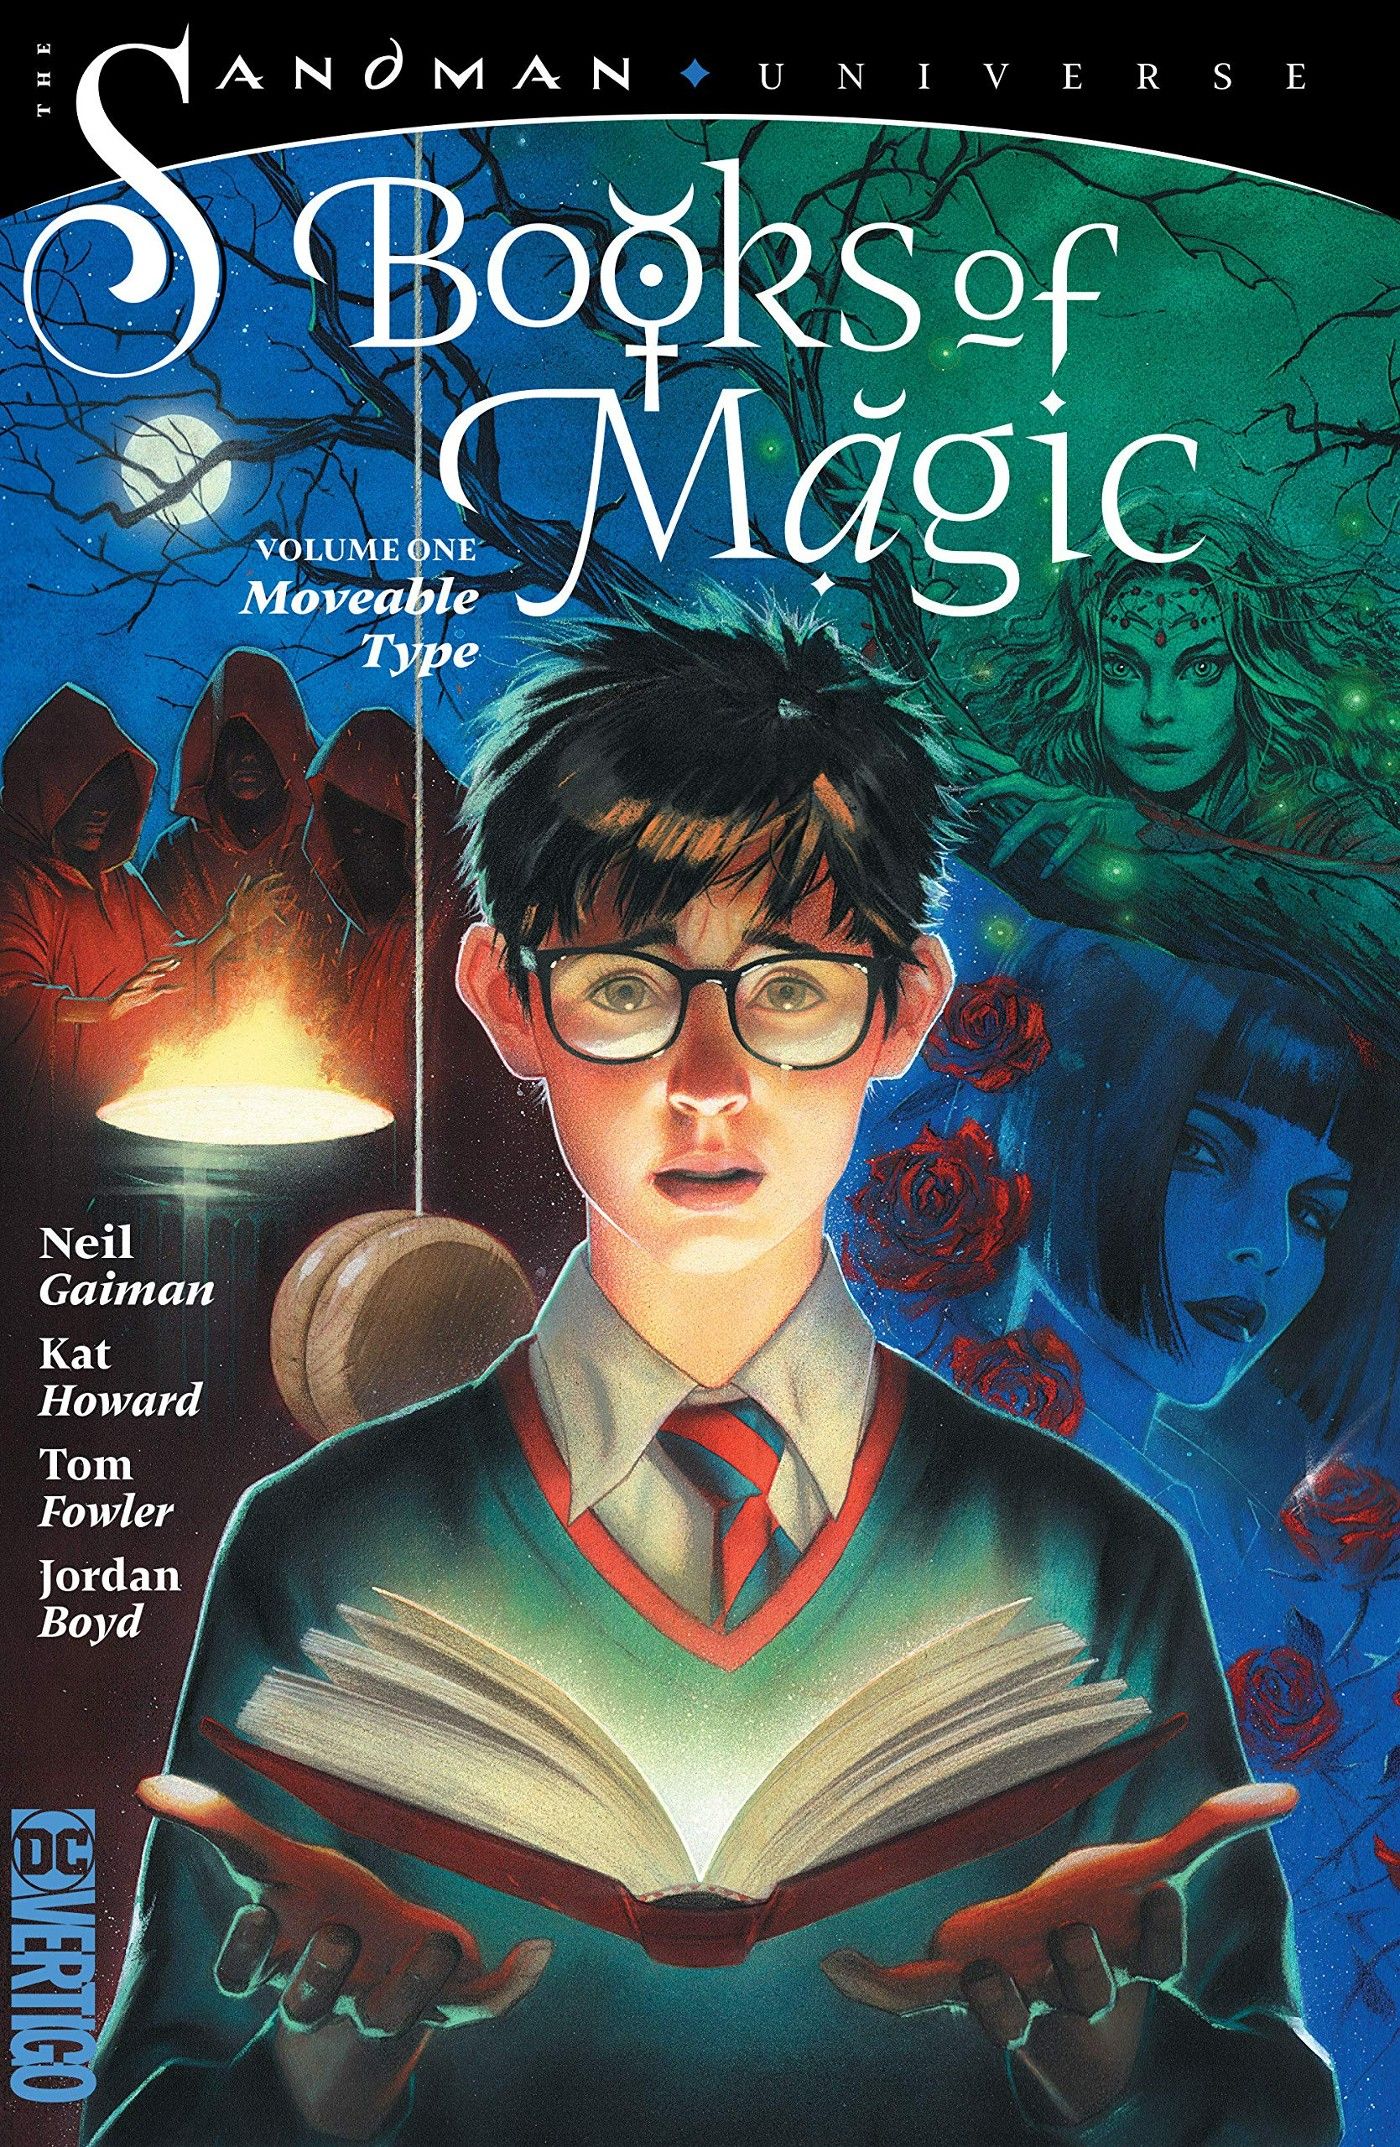 Livros De Magia De Neil Gaiman S O O Substituto Perfeito De Harry Potter Not Cias De Filmes